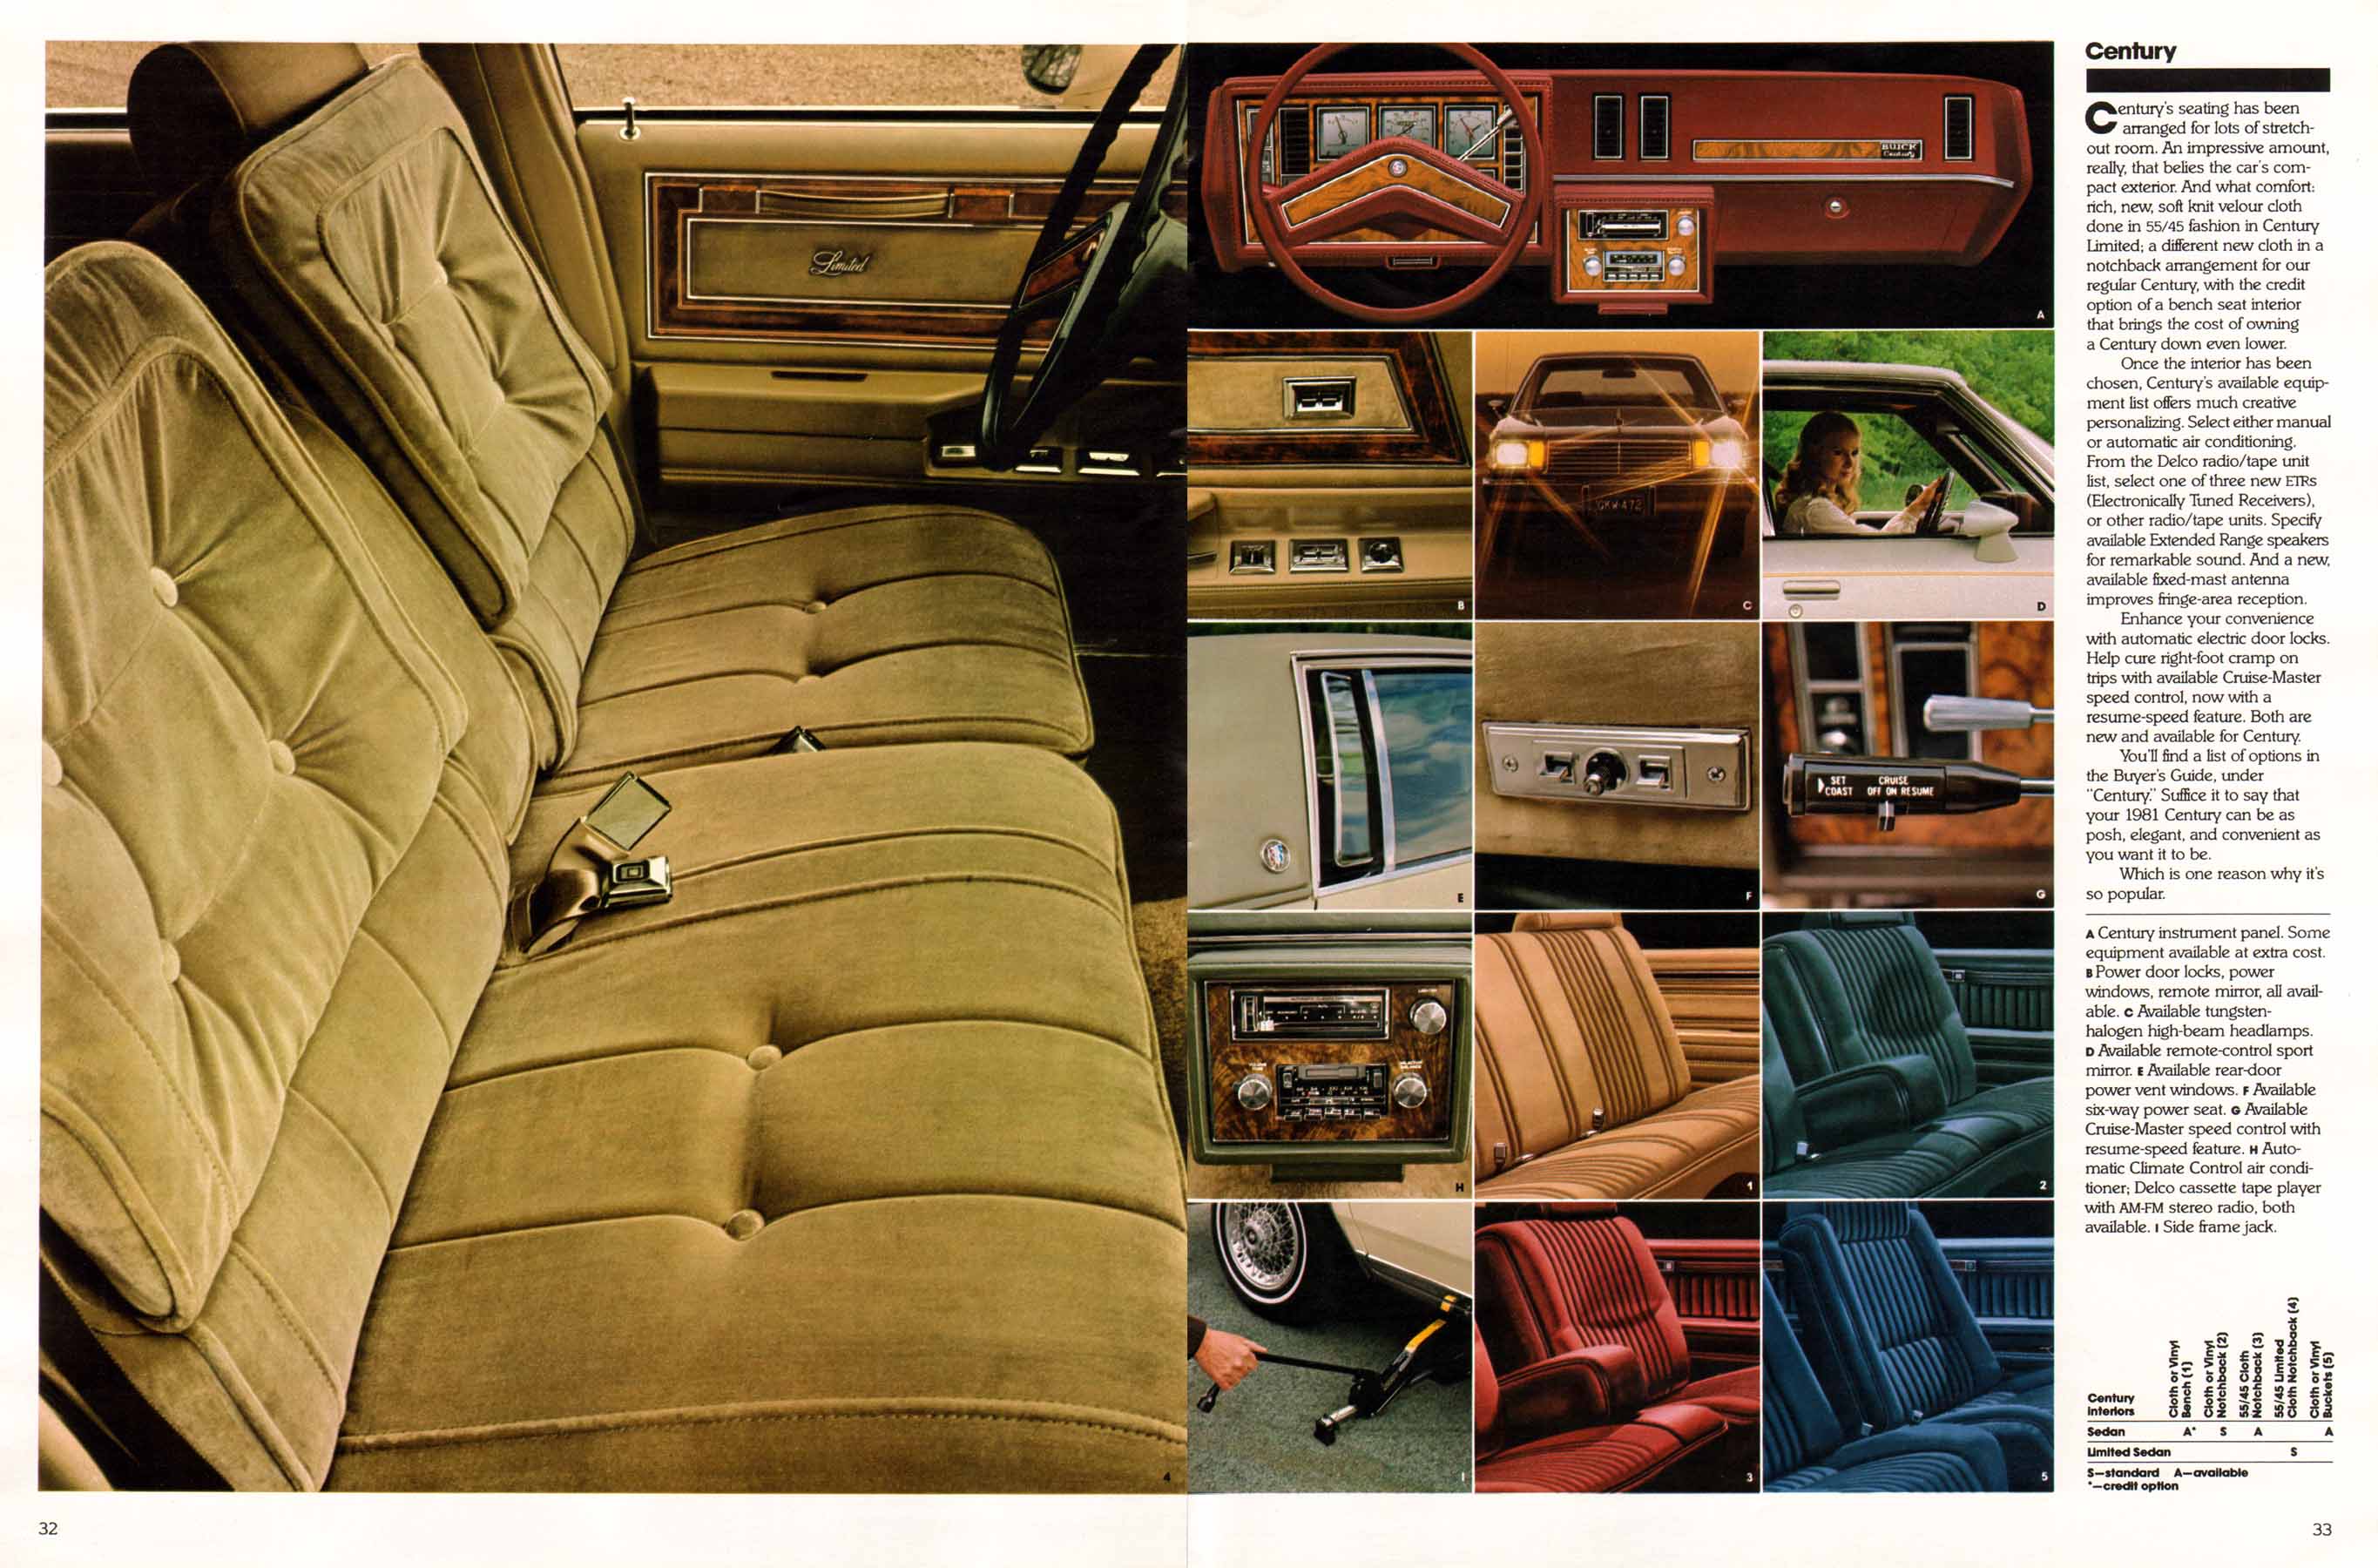 1981 Buick Full Line Prestige-32-33